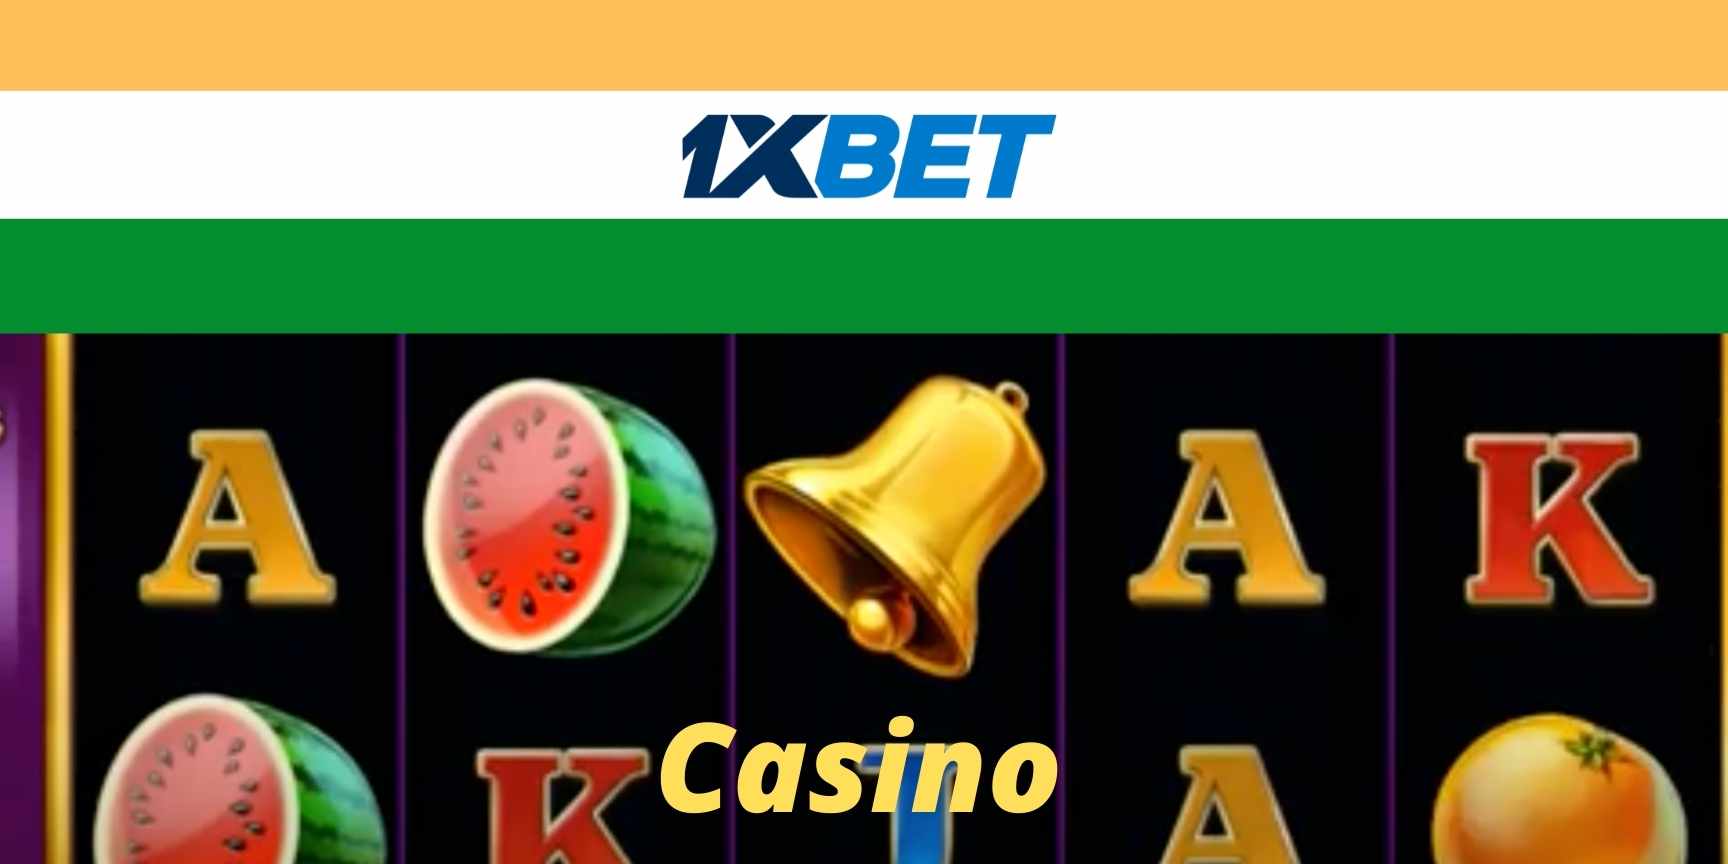 1xbet casino